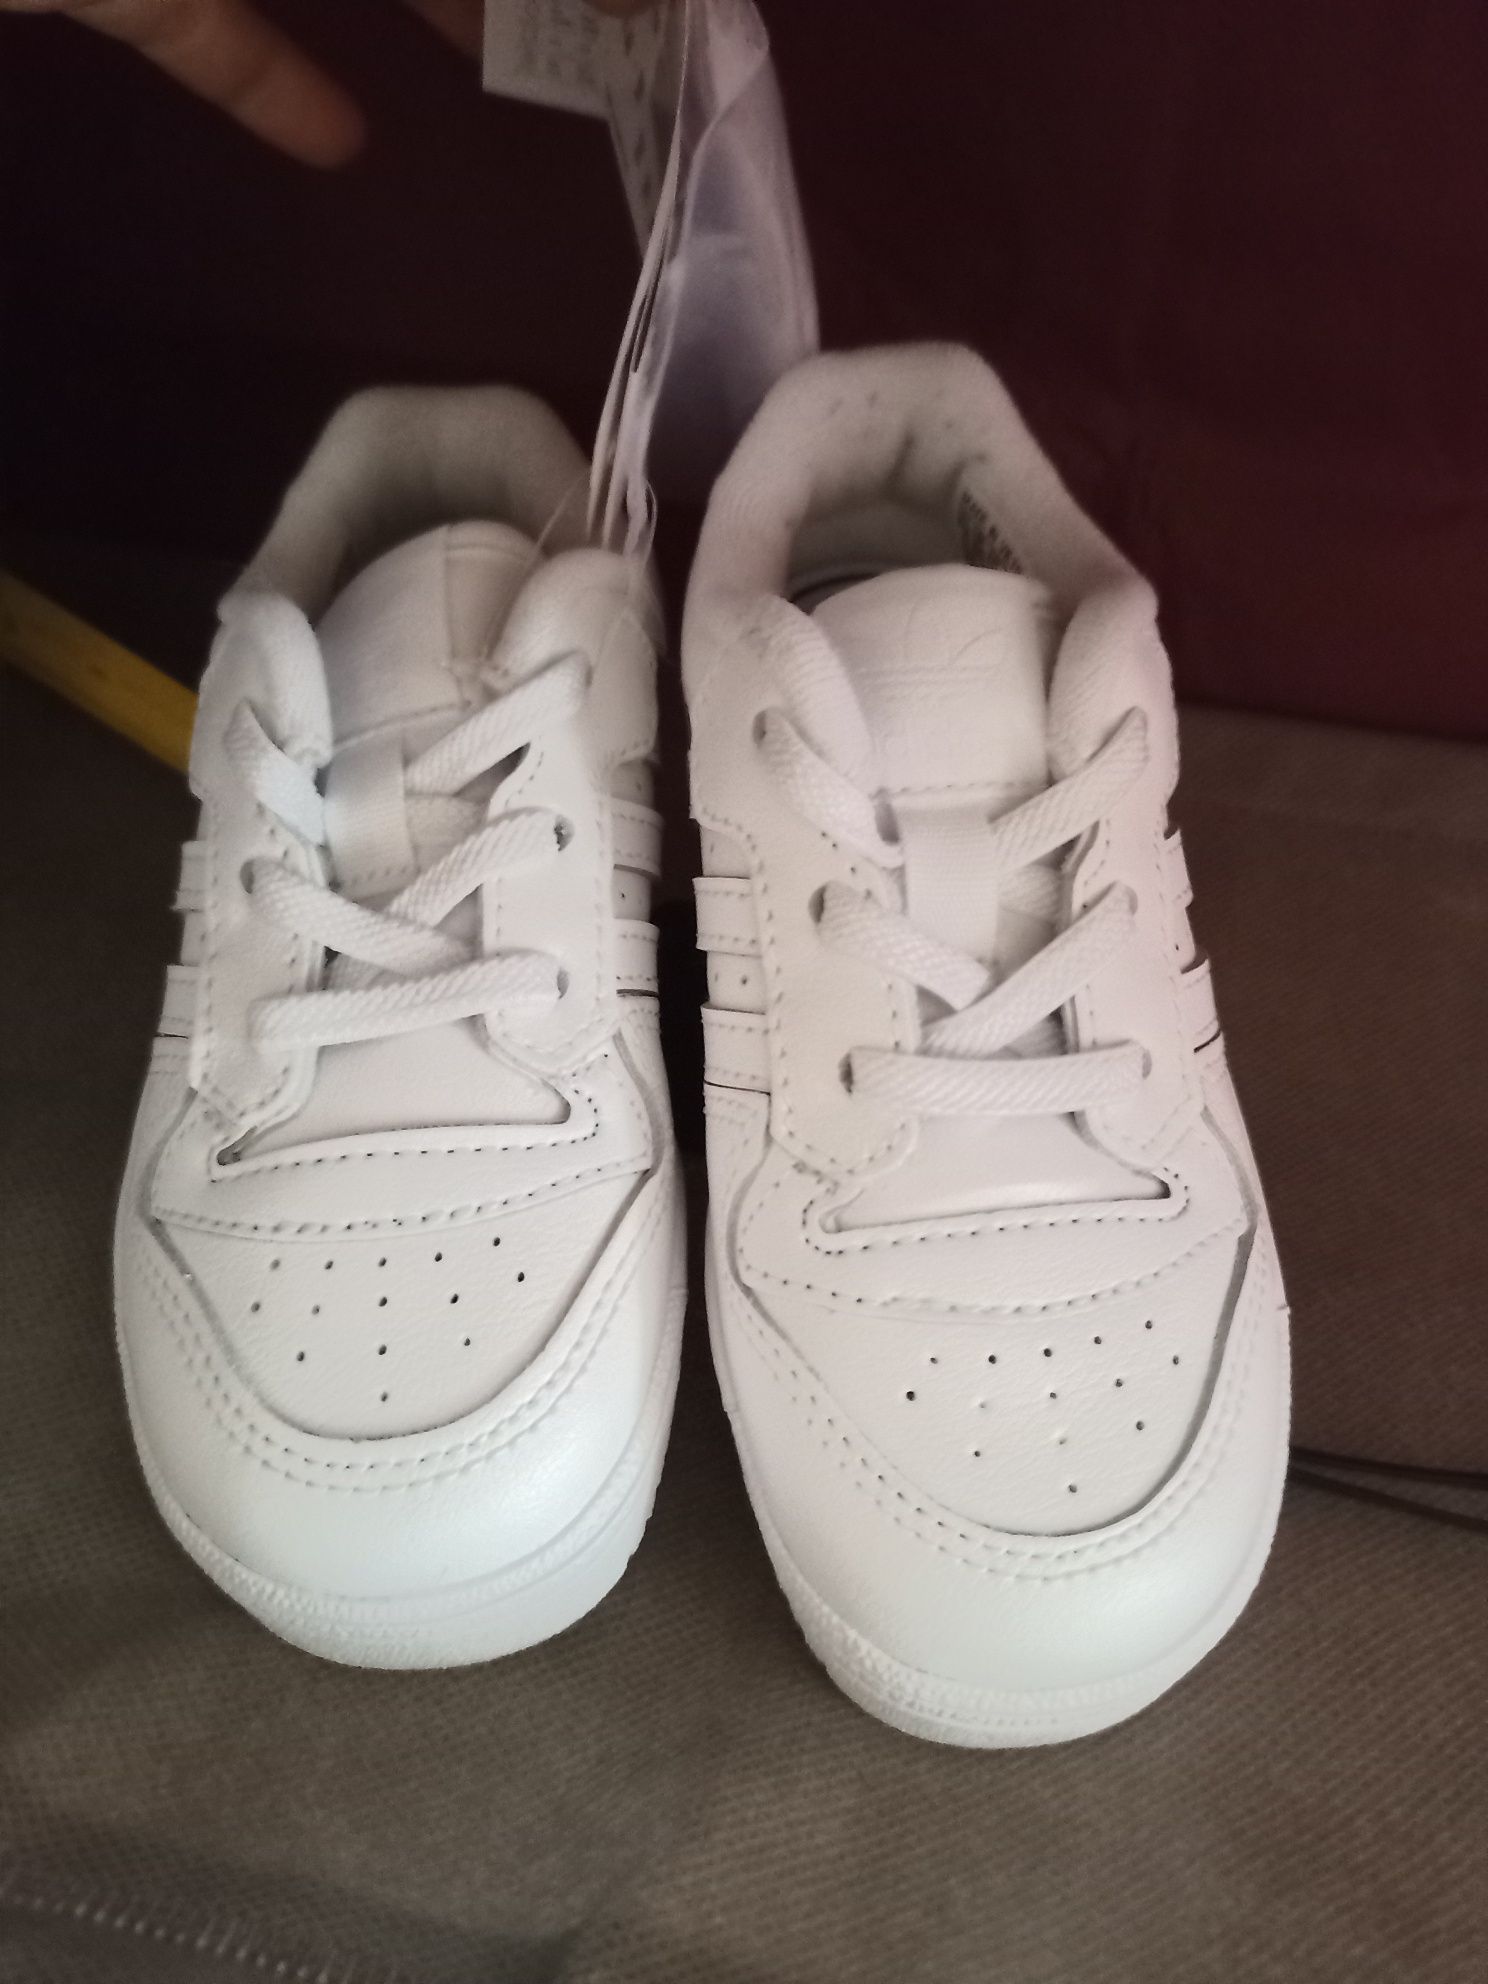 Białe buty adidas rivalry 25,5 wkładka 16,3 cm skóra , gumki wymienne